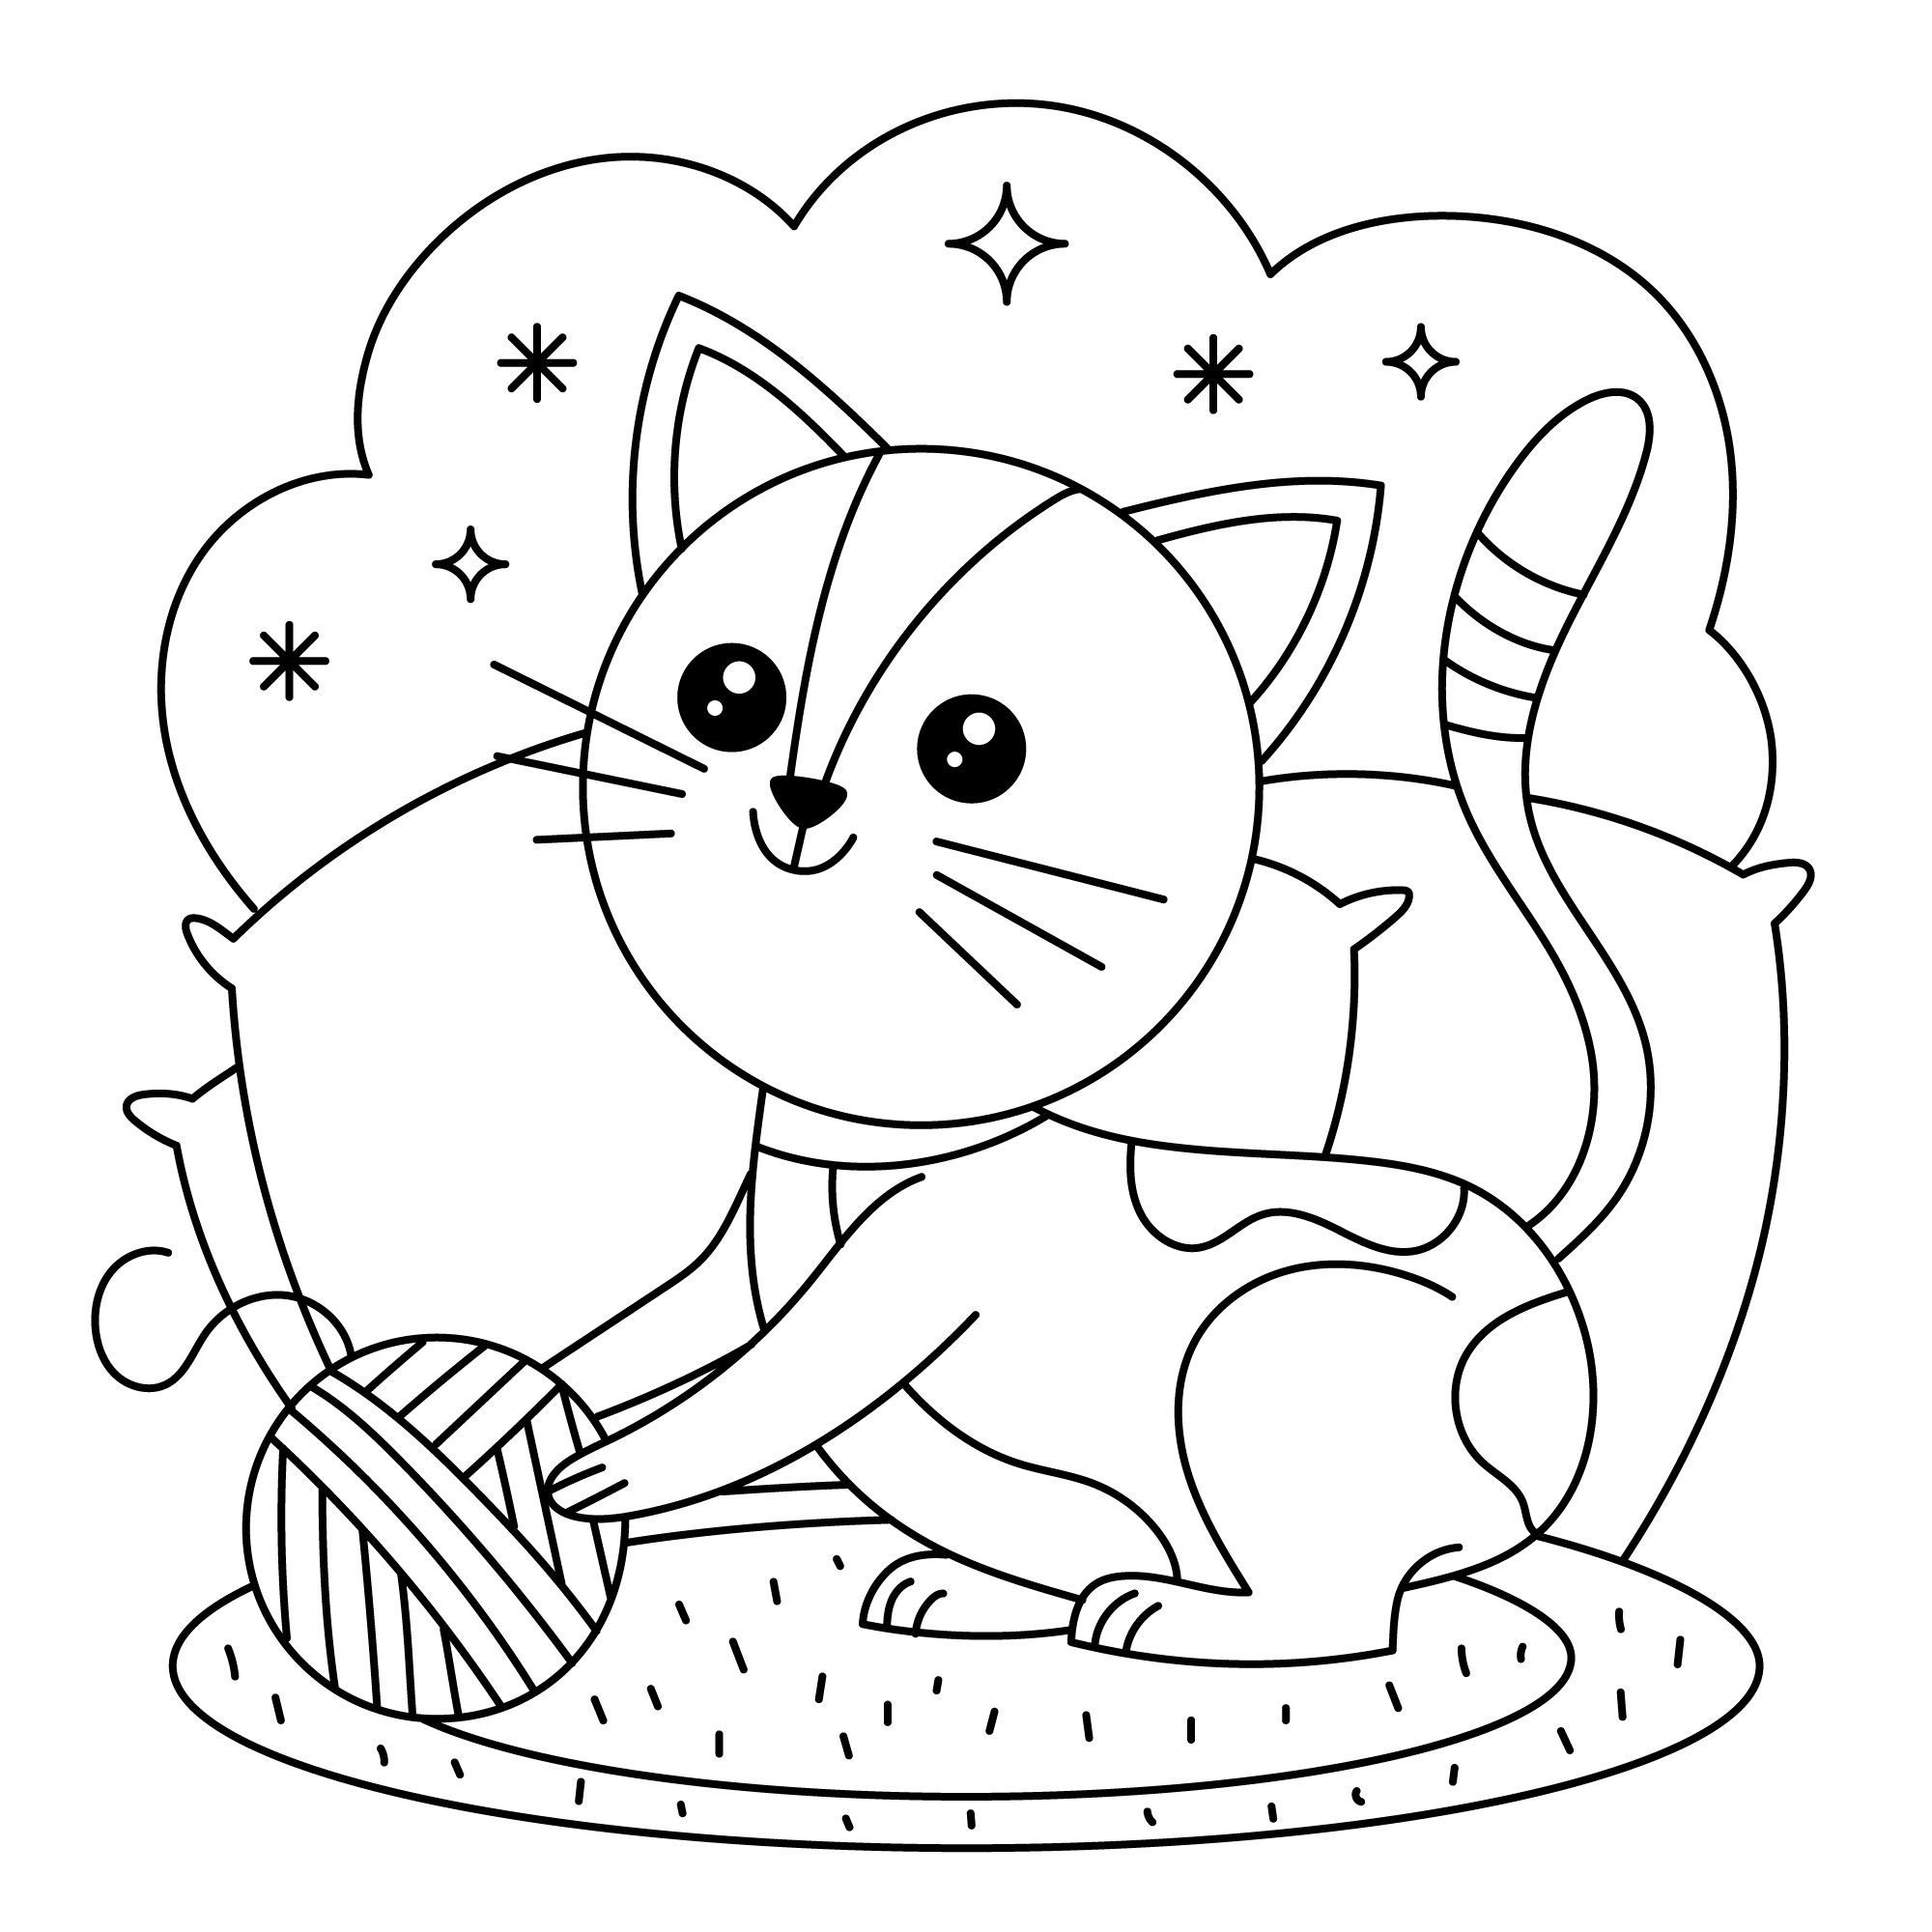 Раскраска для детей: кошка играет с клубком и подушками